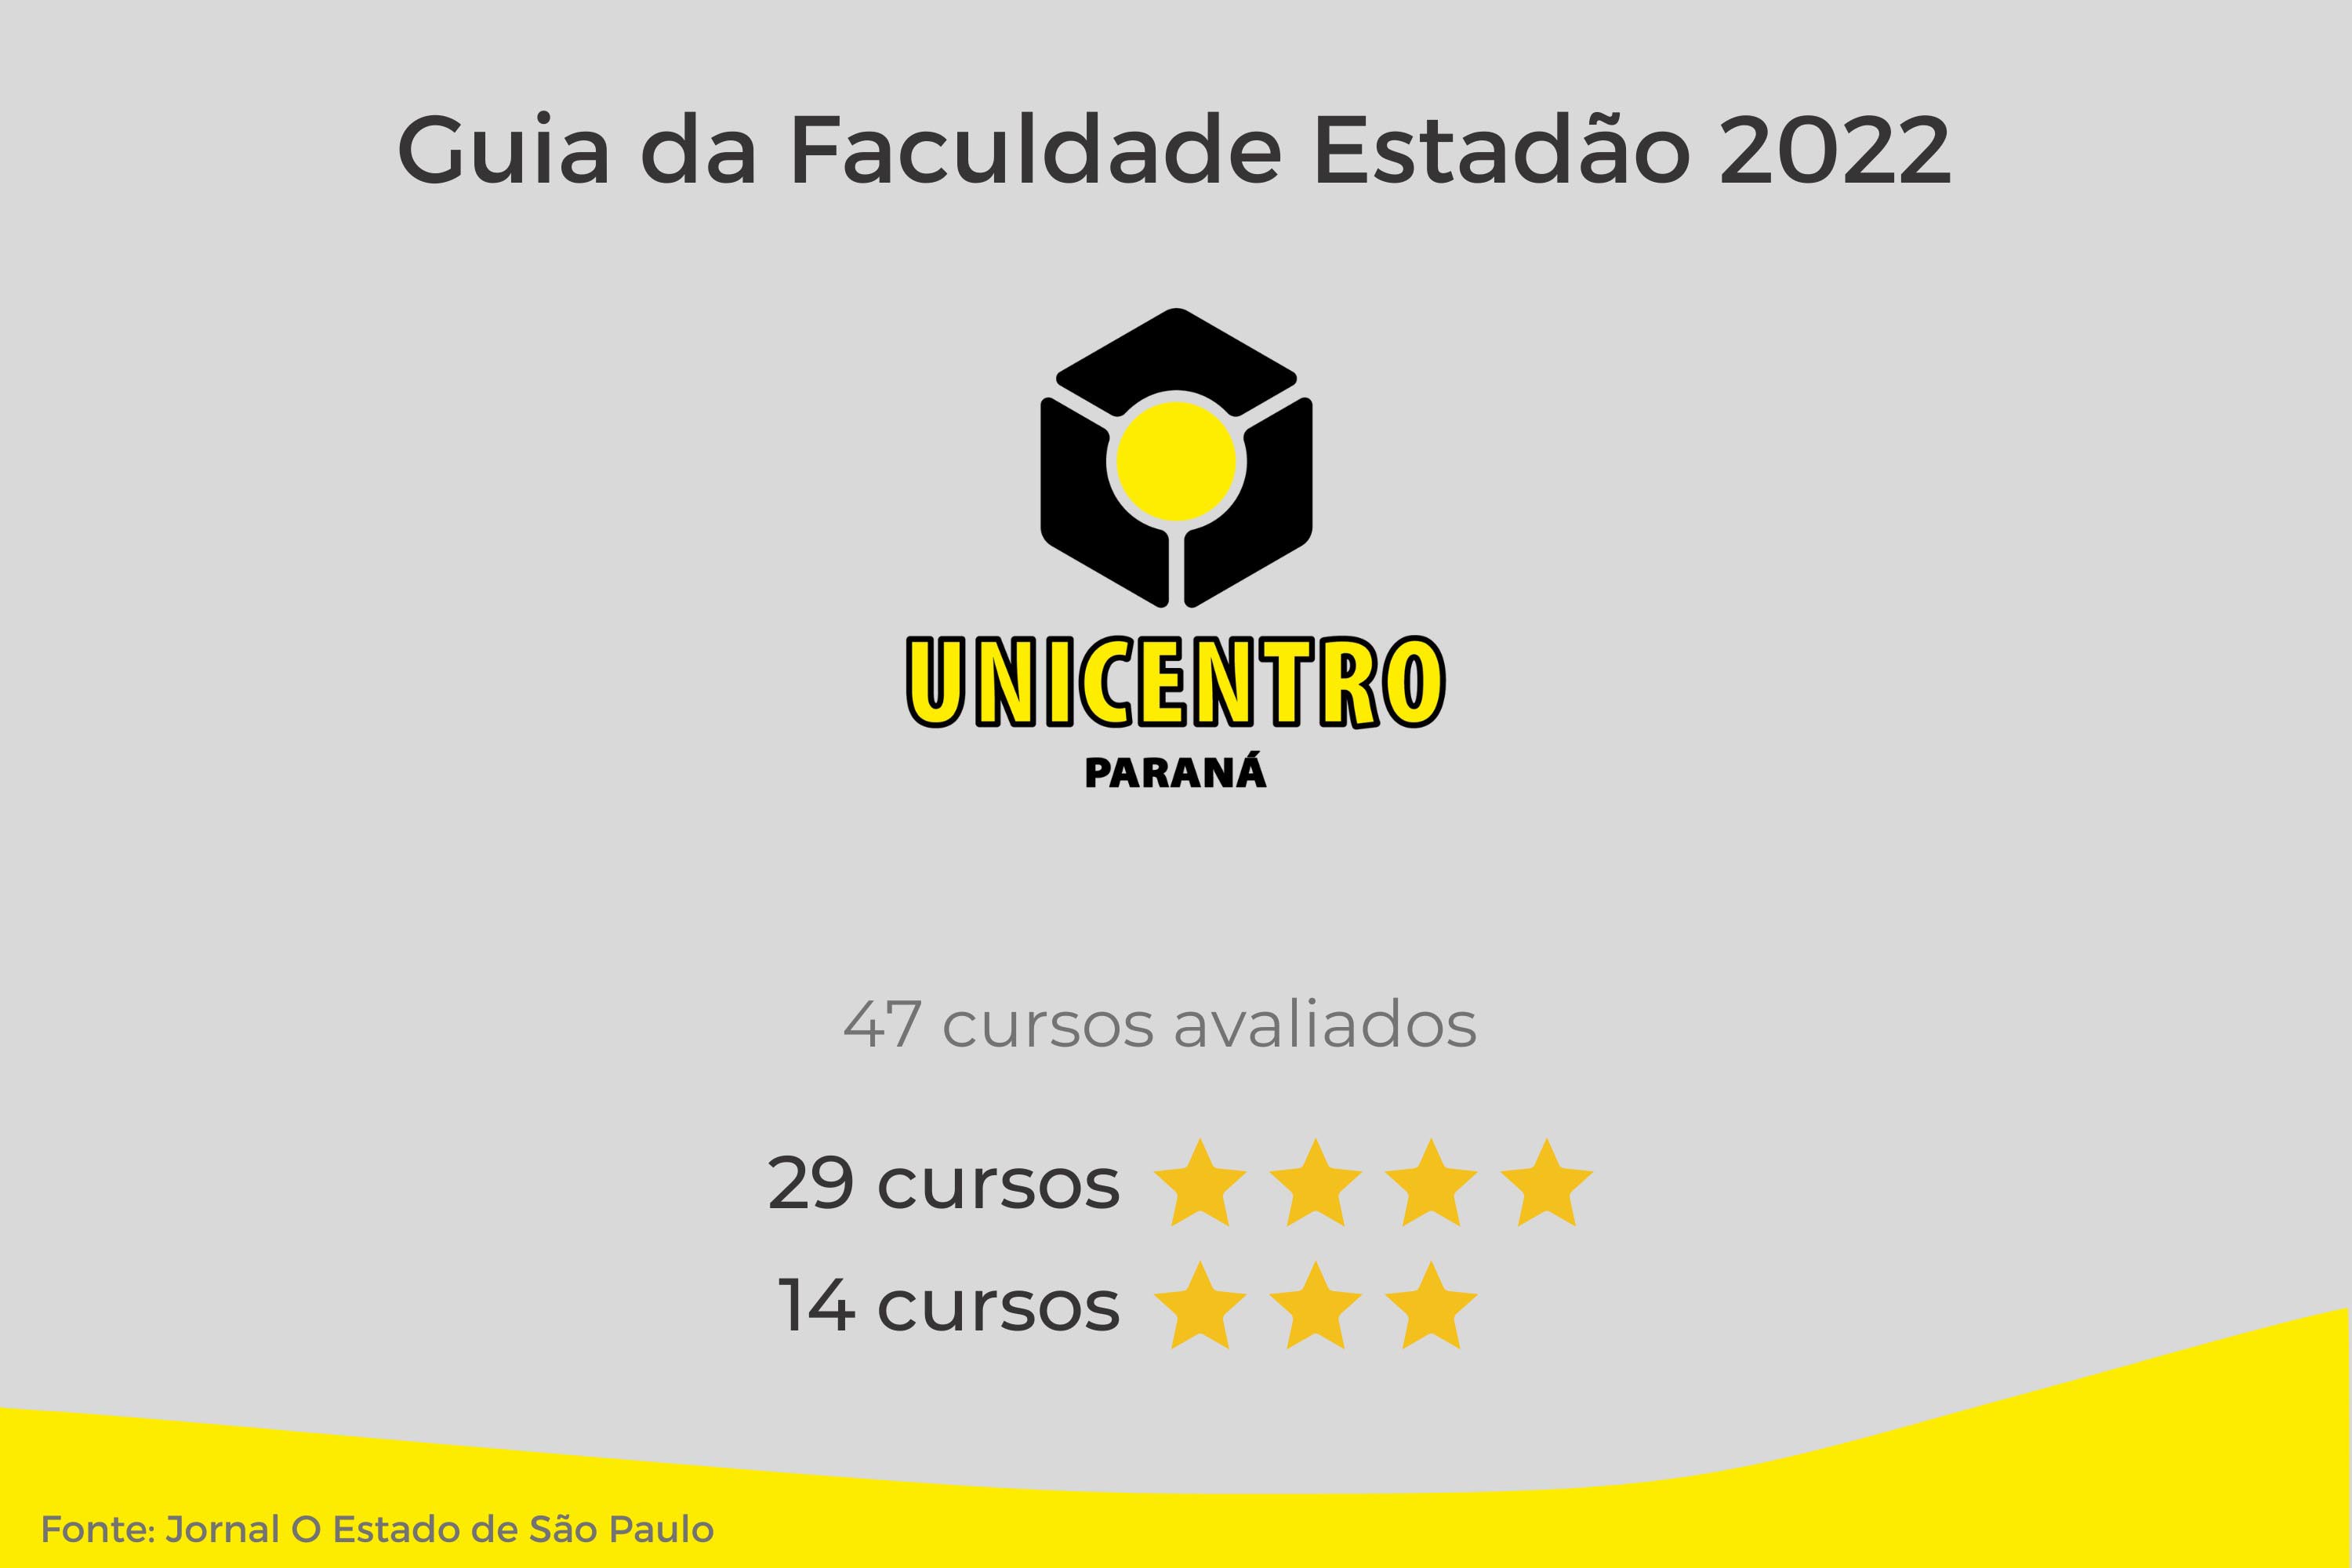  Universidades estaduais do Paraná têm 13 cursos classificados com 5 estrelas no Guia da Faculdade Estadão